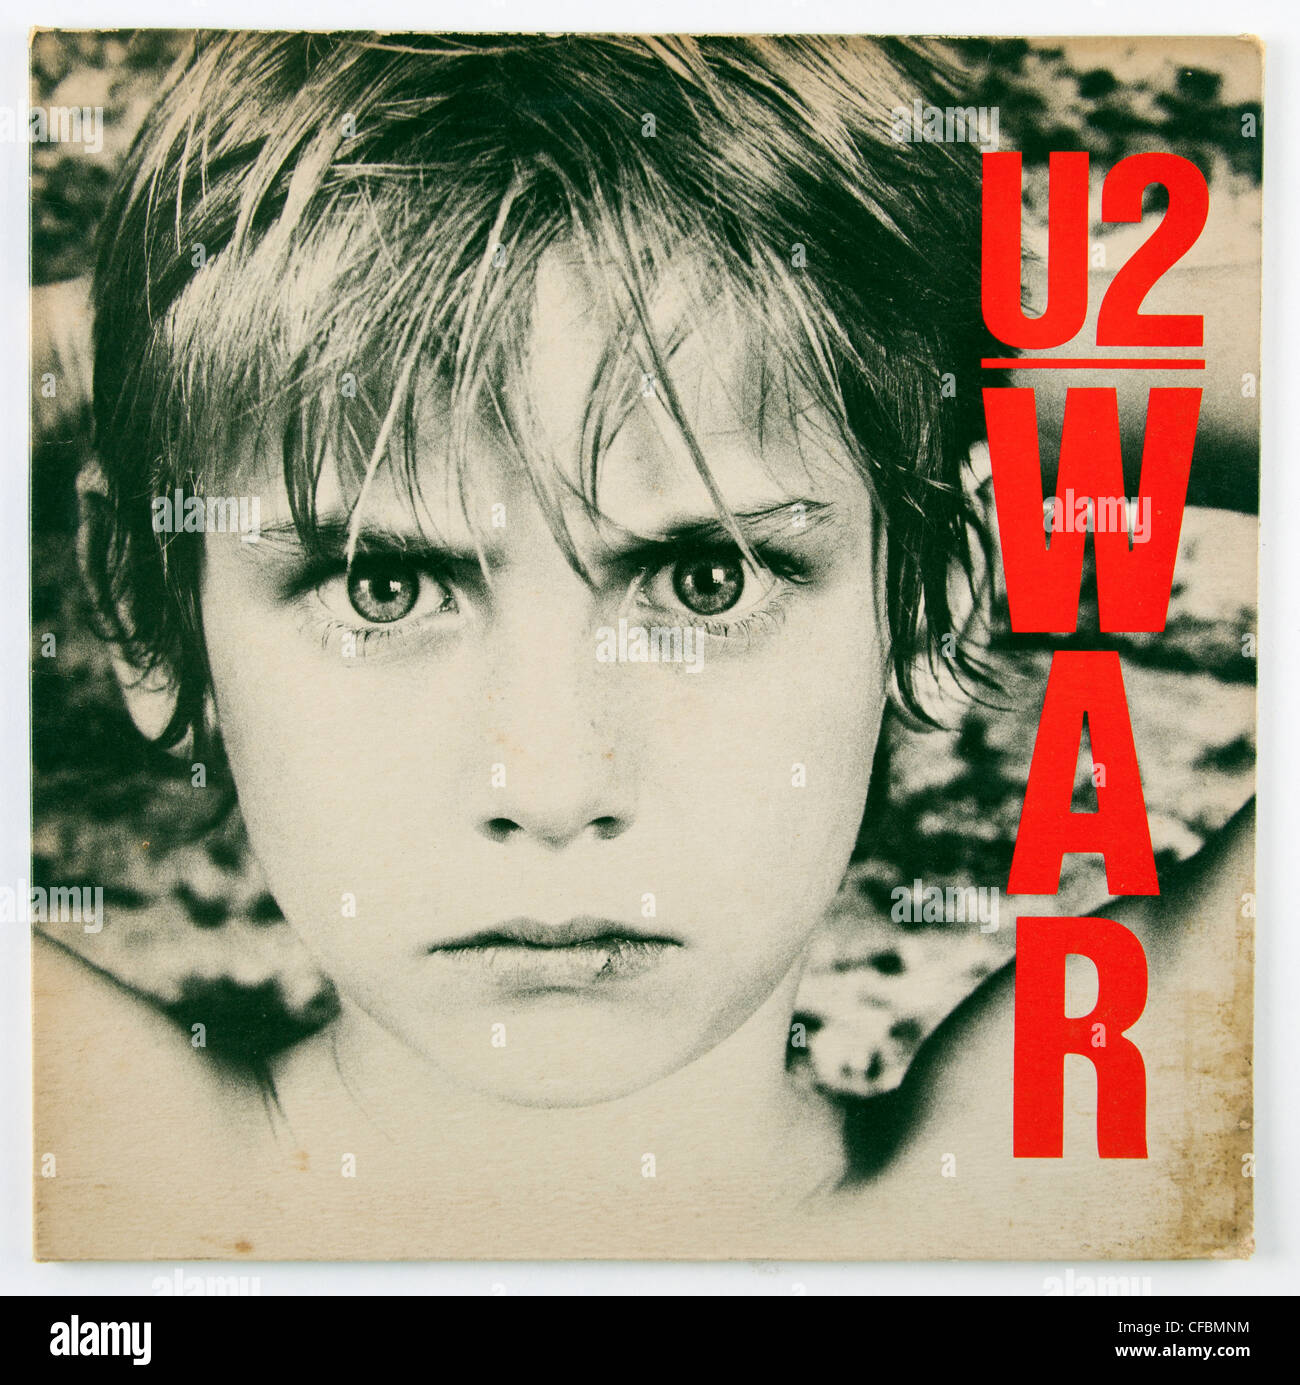 War - Album by U2